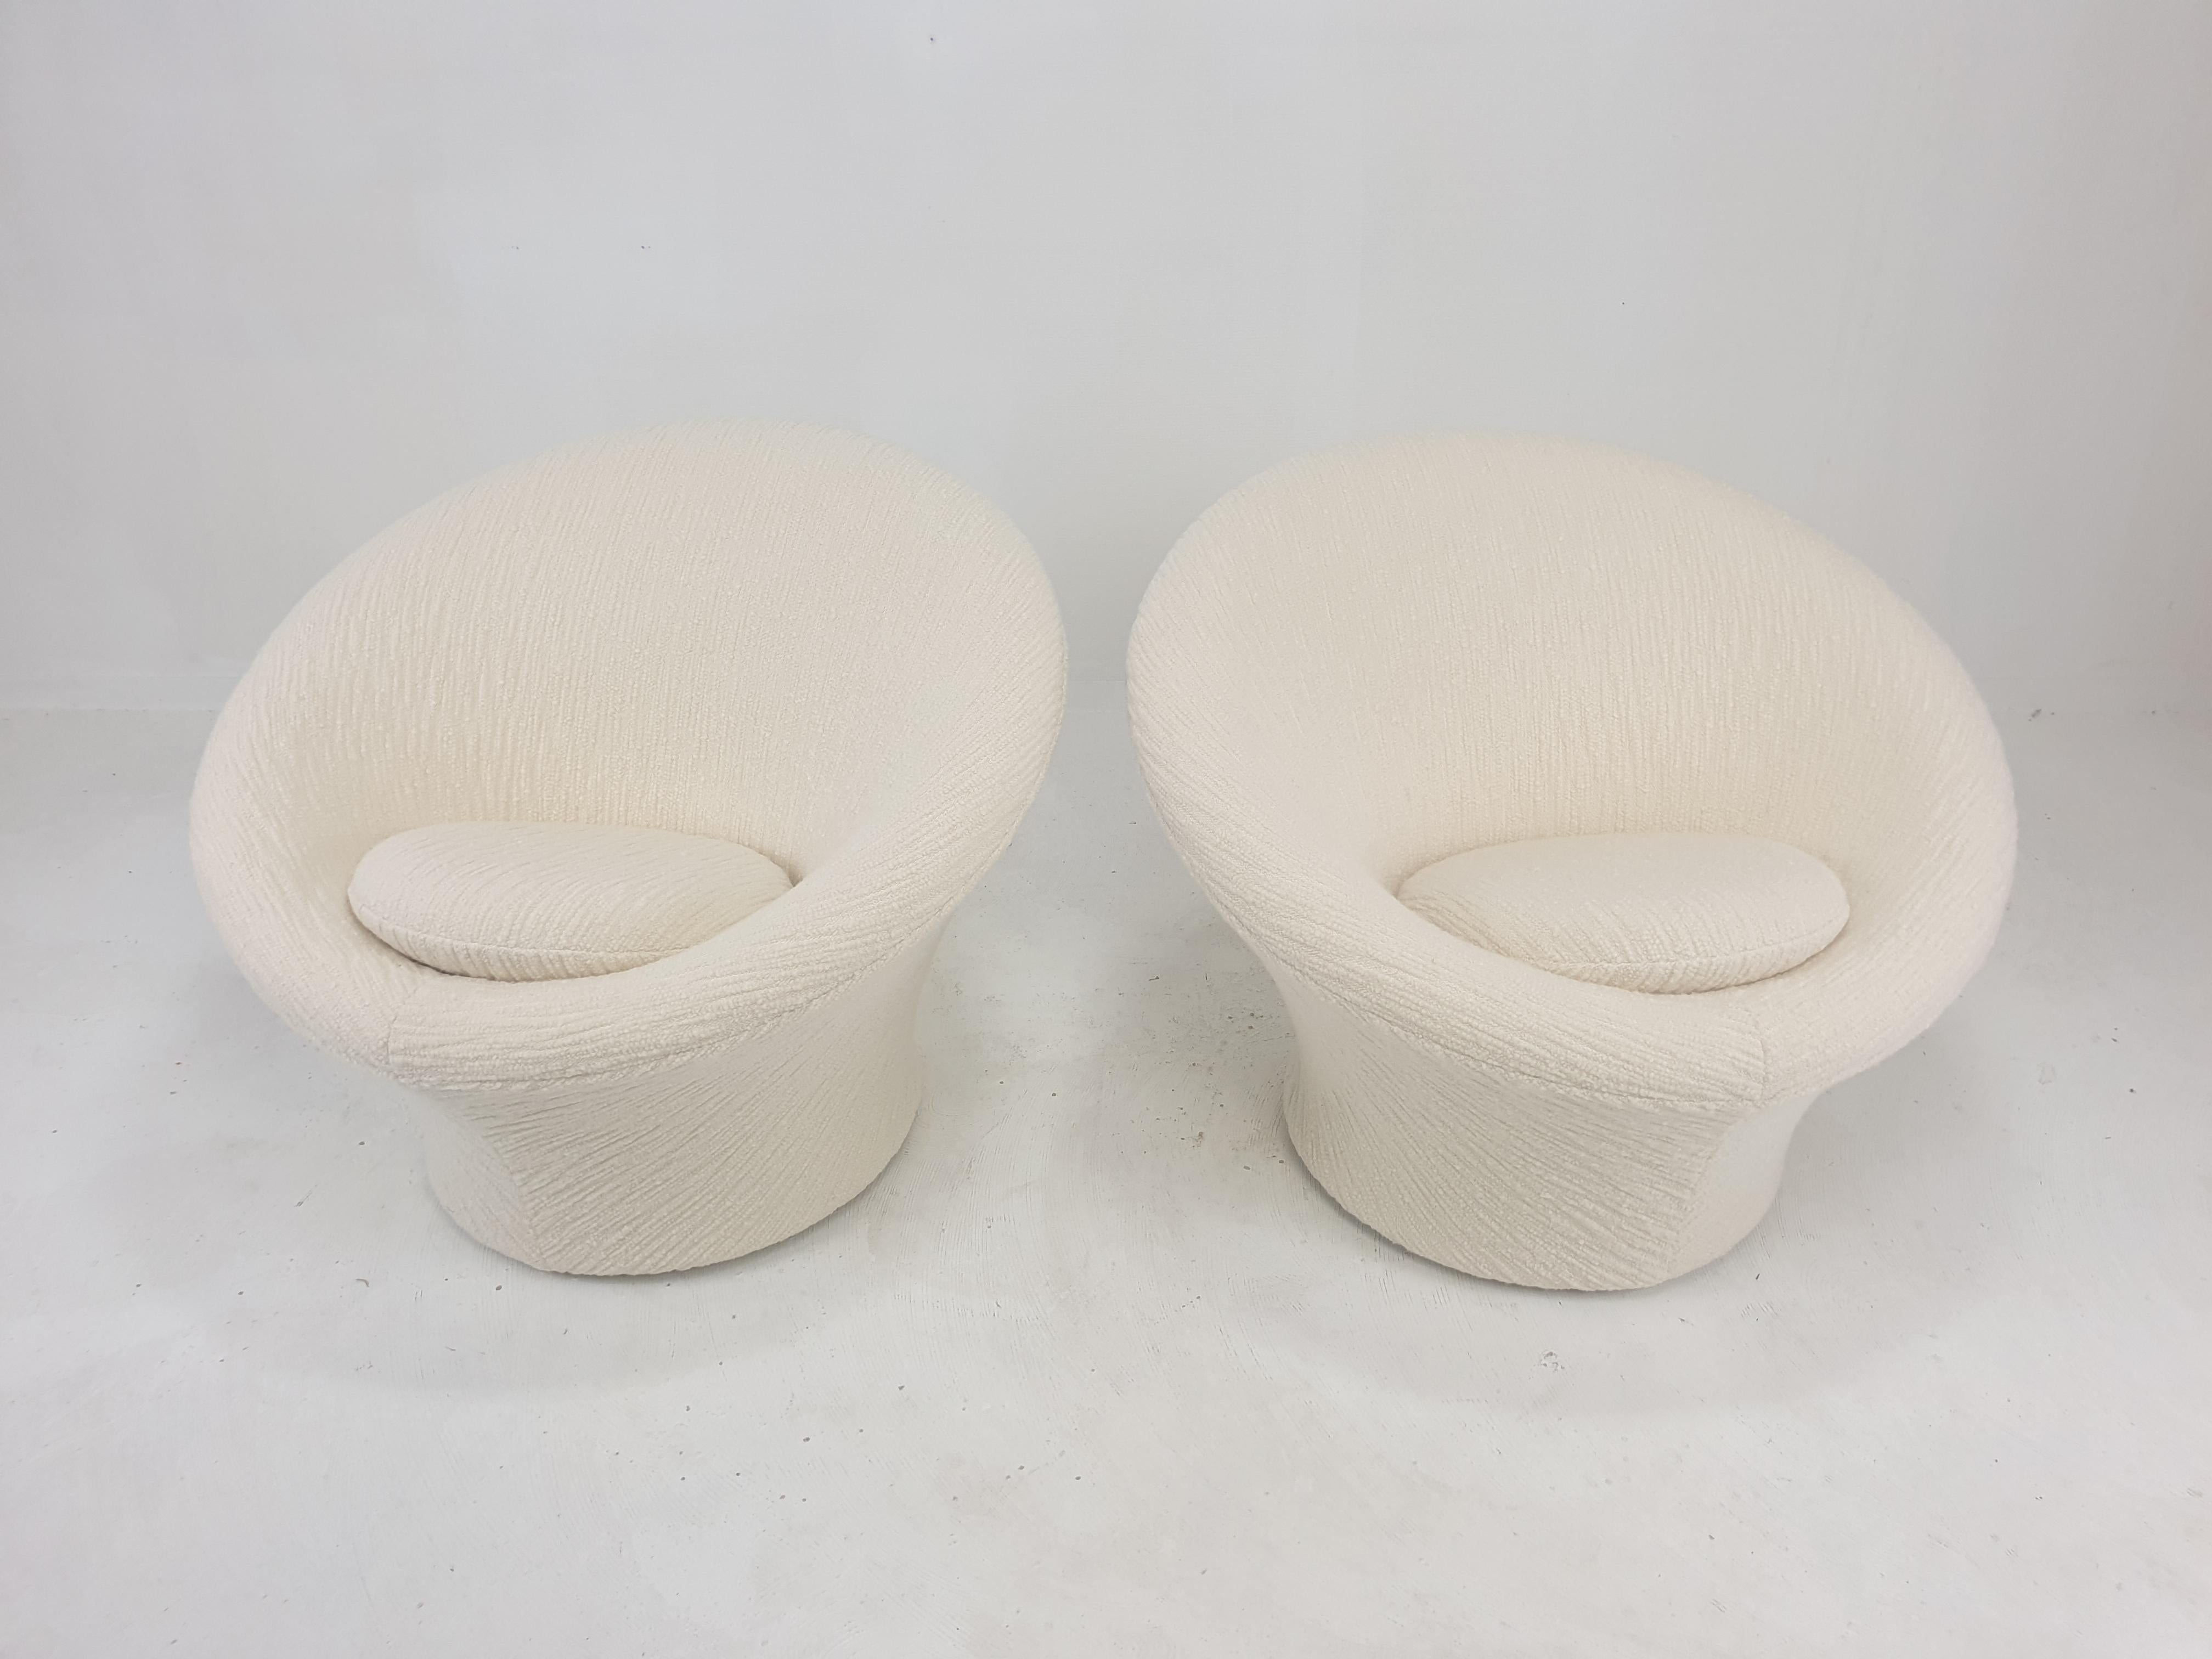 Ensemble de 2 chaises champignons Artifort très confortables et douillettes, conçues par Pierre Paulin dans les années 60. 

Recouvert d'un superbe tissu en laine de haute qualité. 

Les chaises viennent d'être entièrement restaurées par un